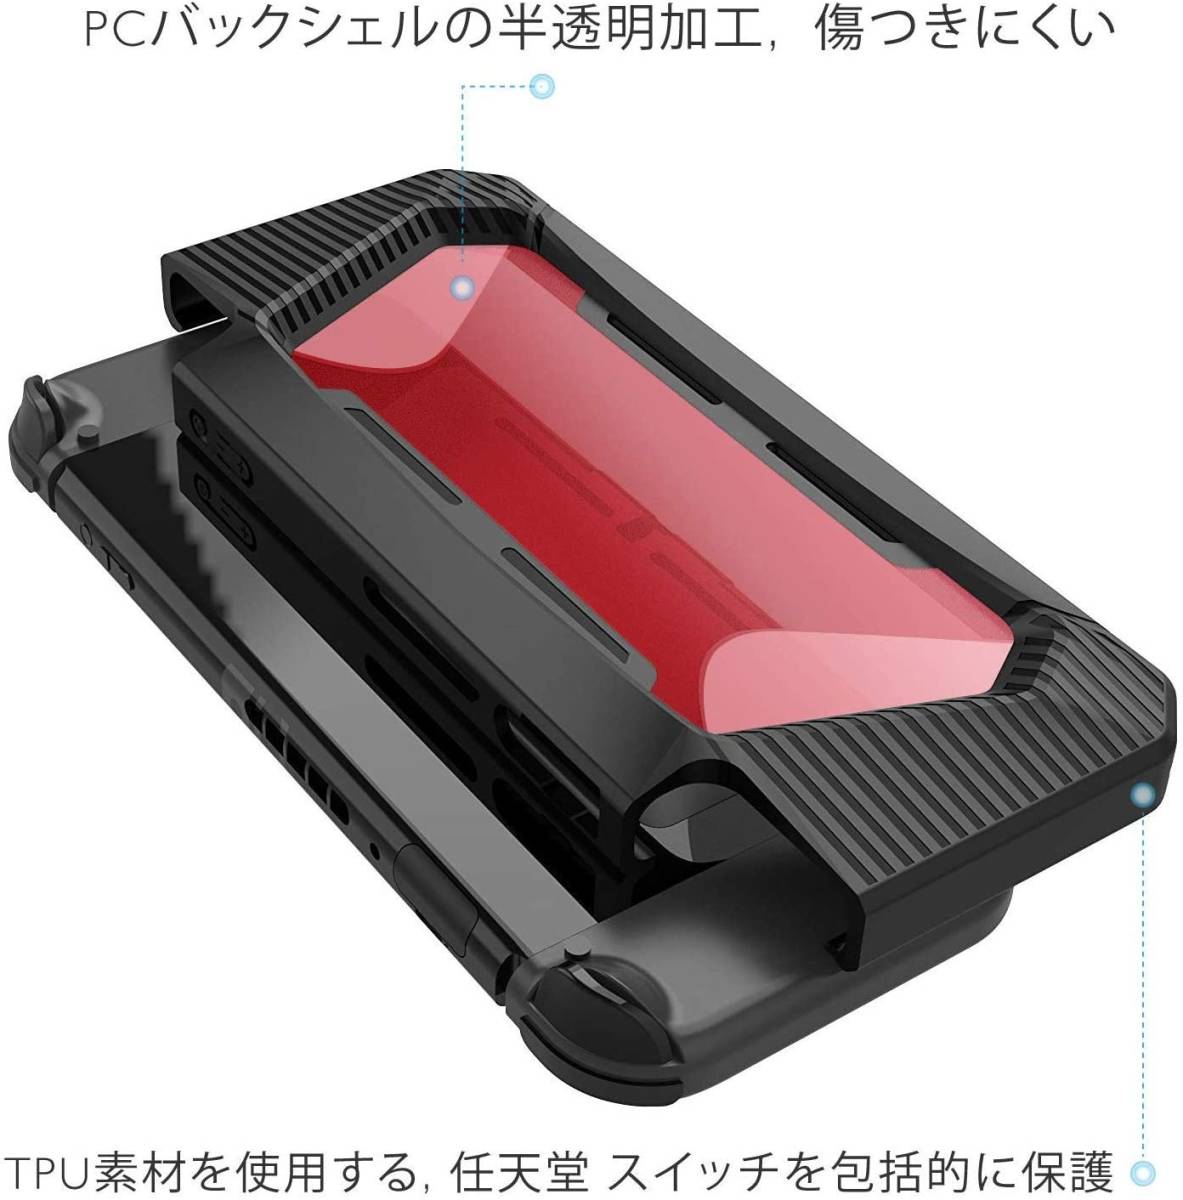 「F104透明レッド SWケース」新品 Nintendo Switch カバー全面保護透明レッド_画像7